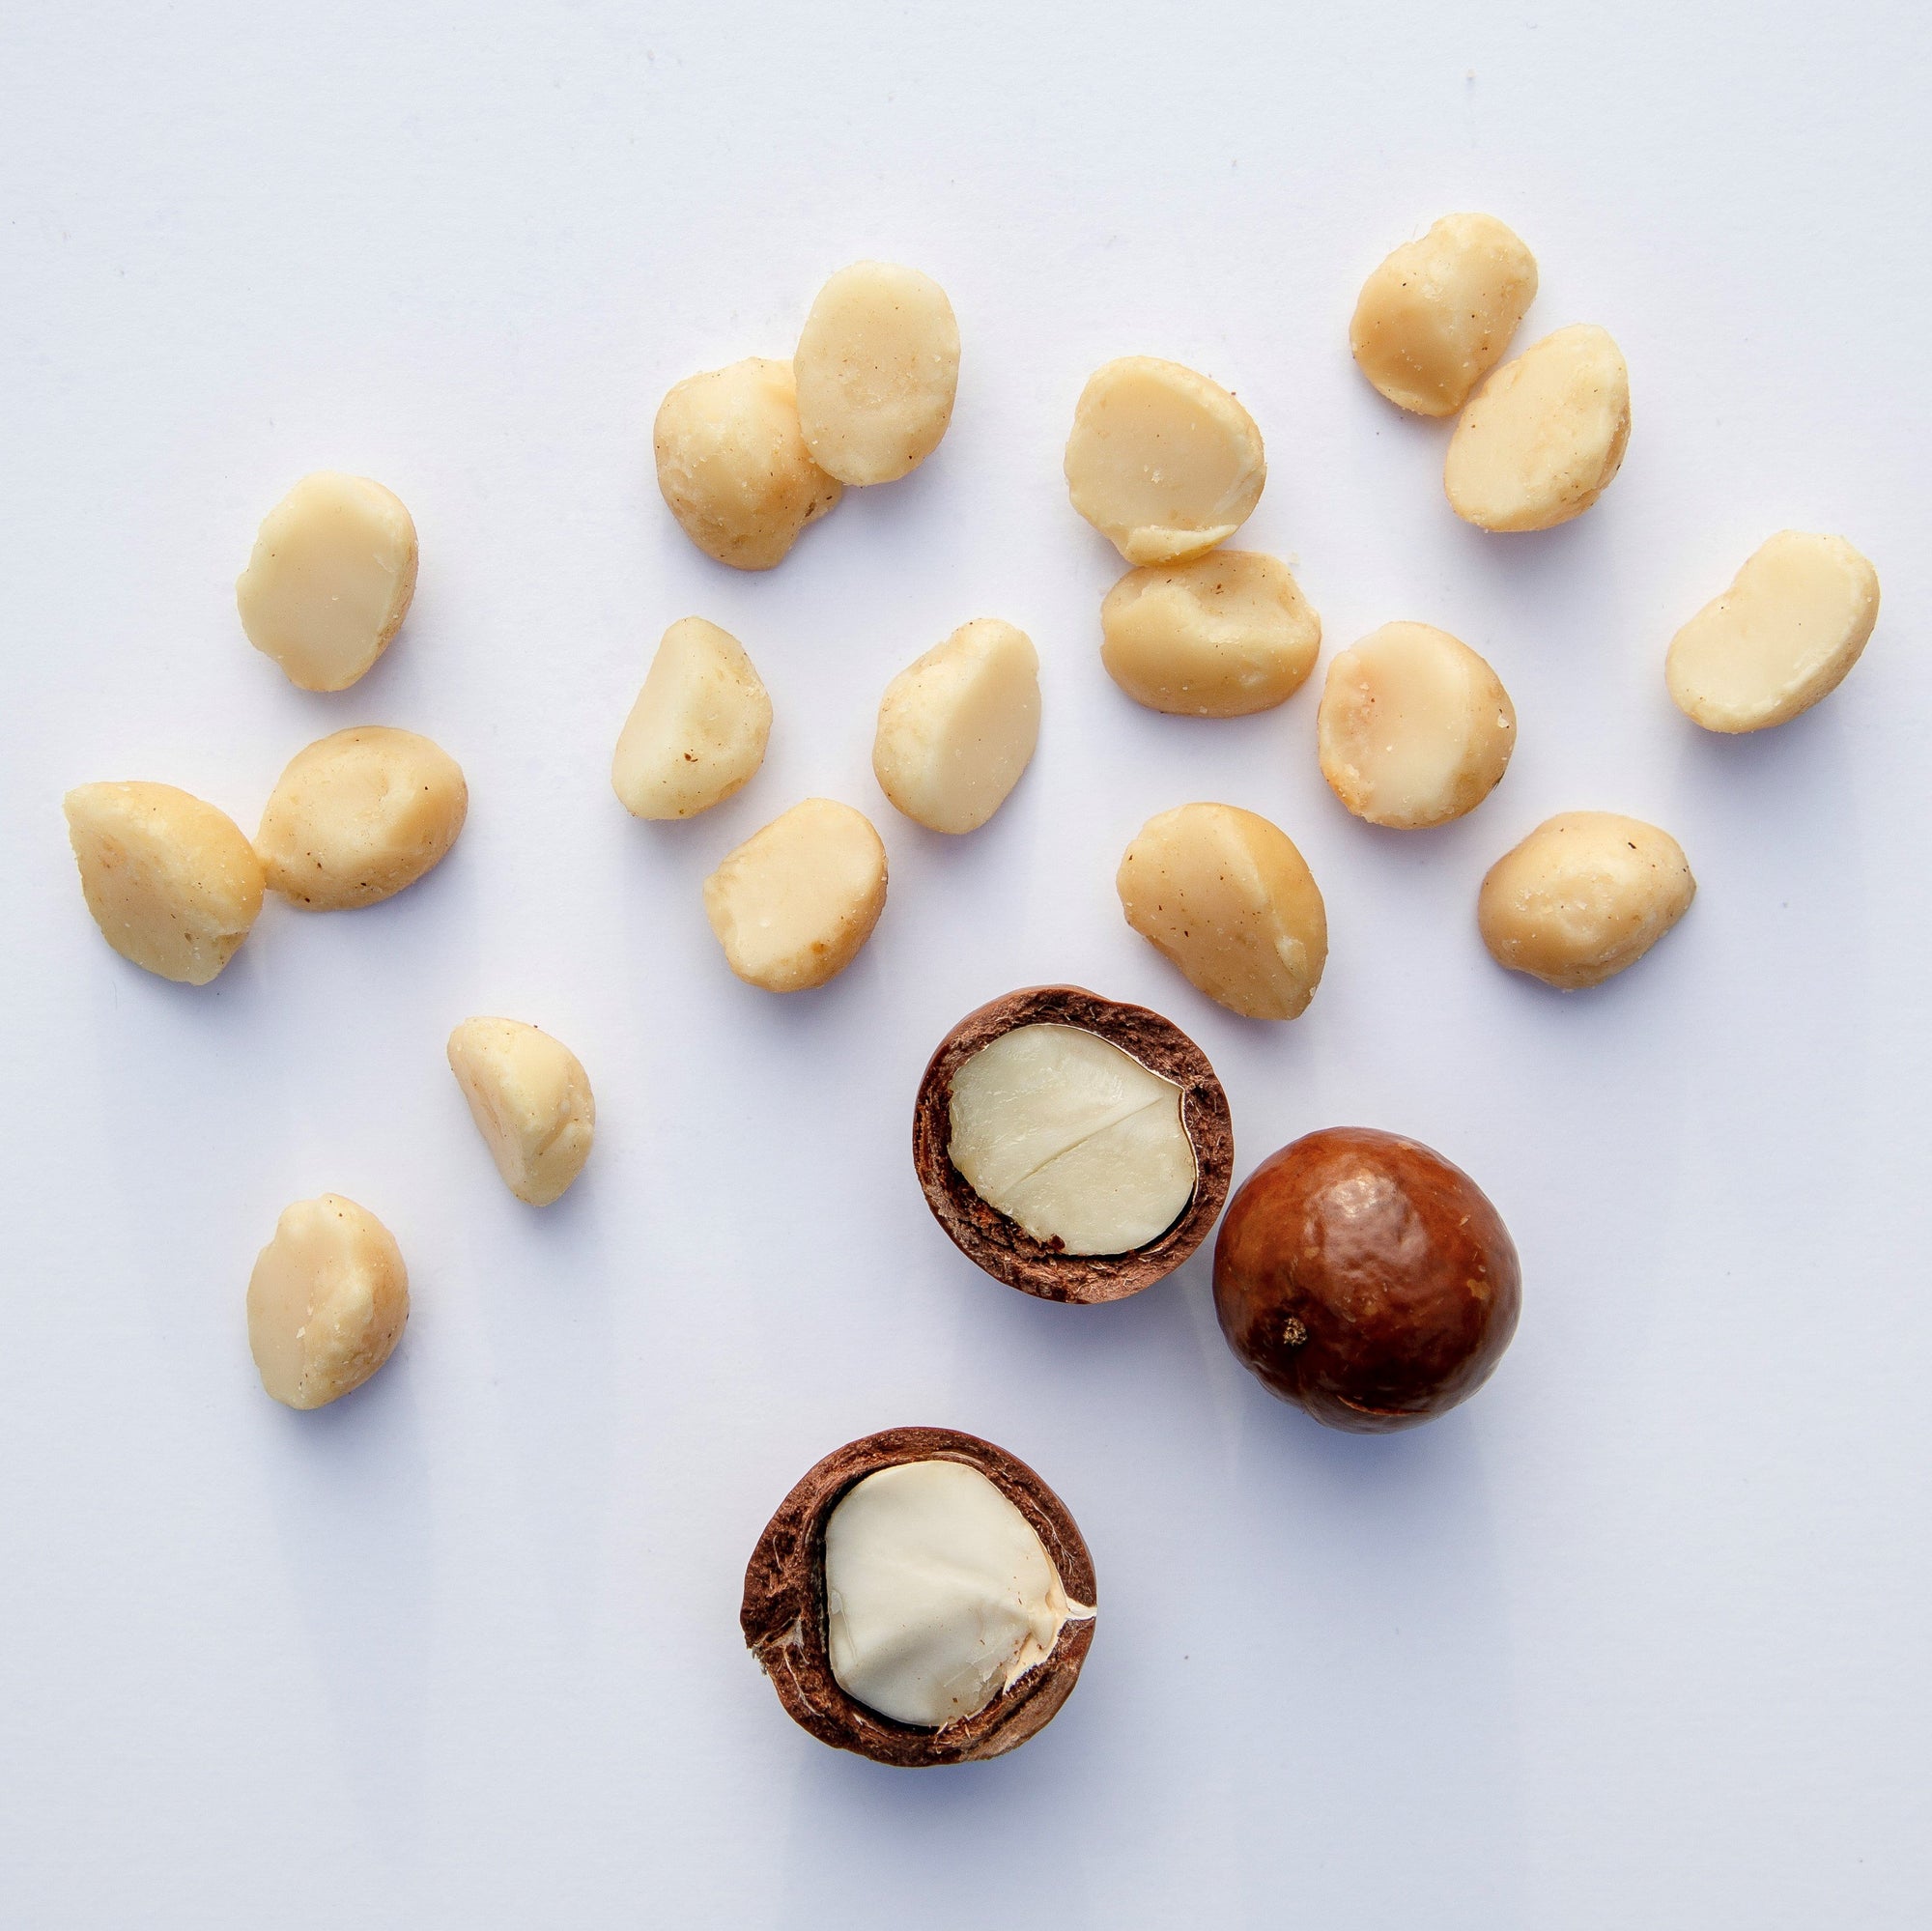 Pop-Up Mākeke - Island Harvest - Organic Macadamia Nuts with Sea Salt - Unpackaged